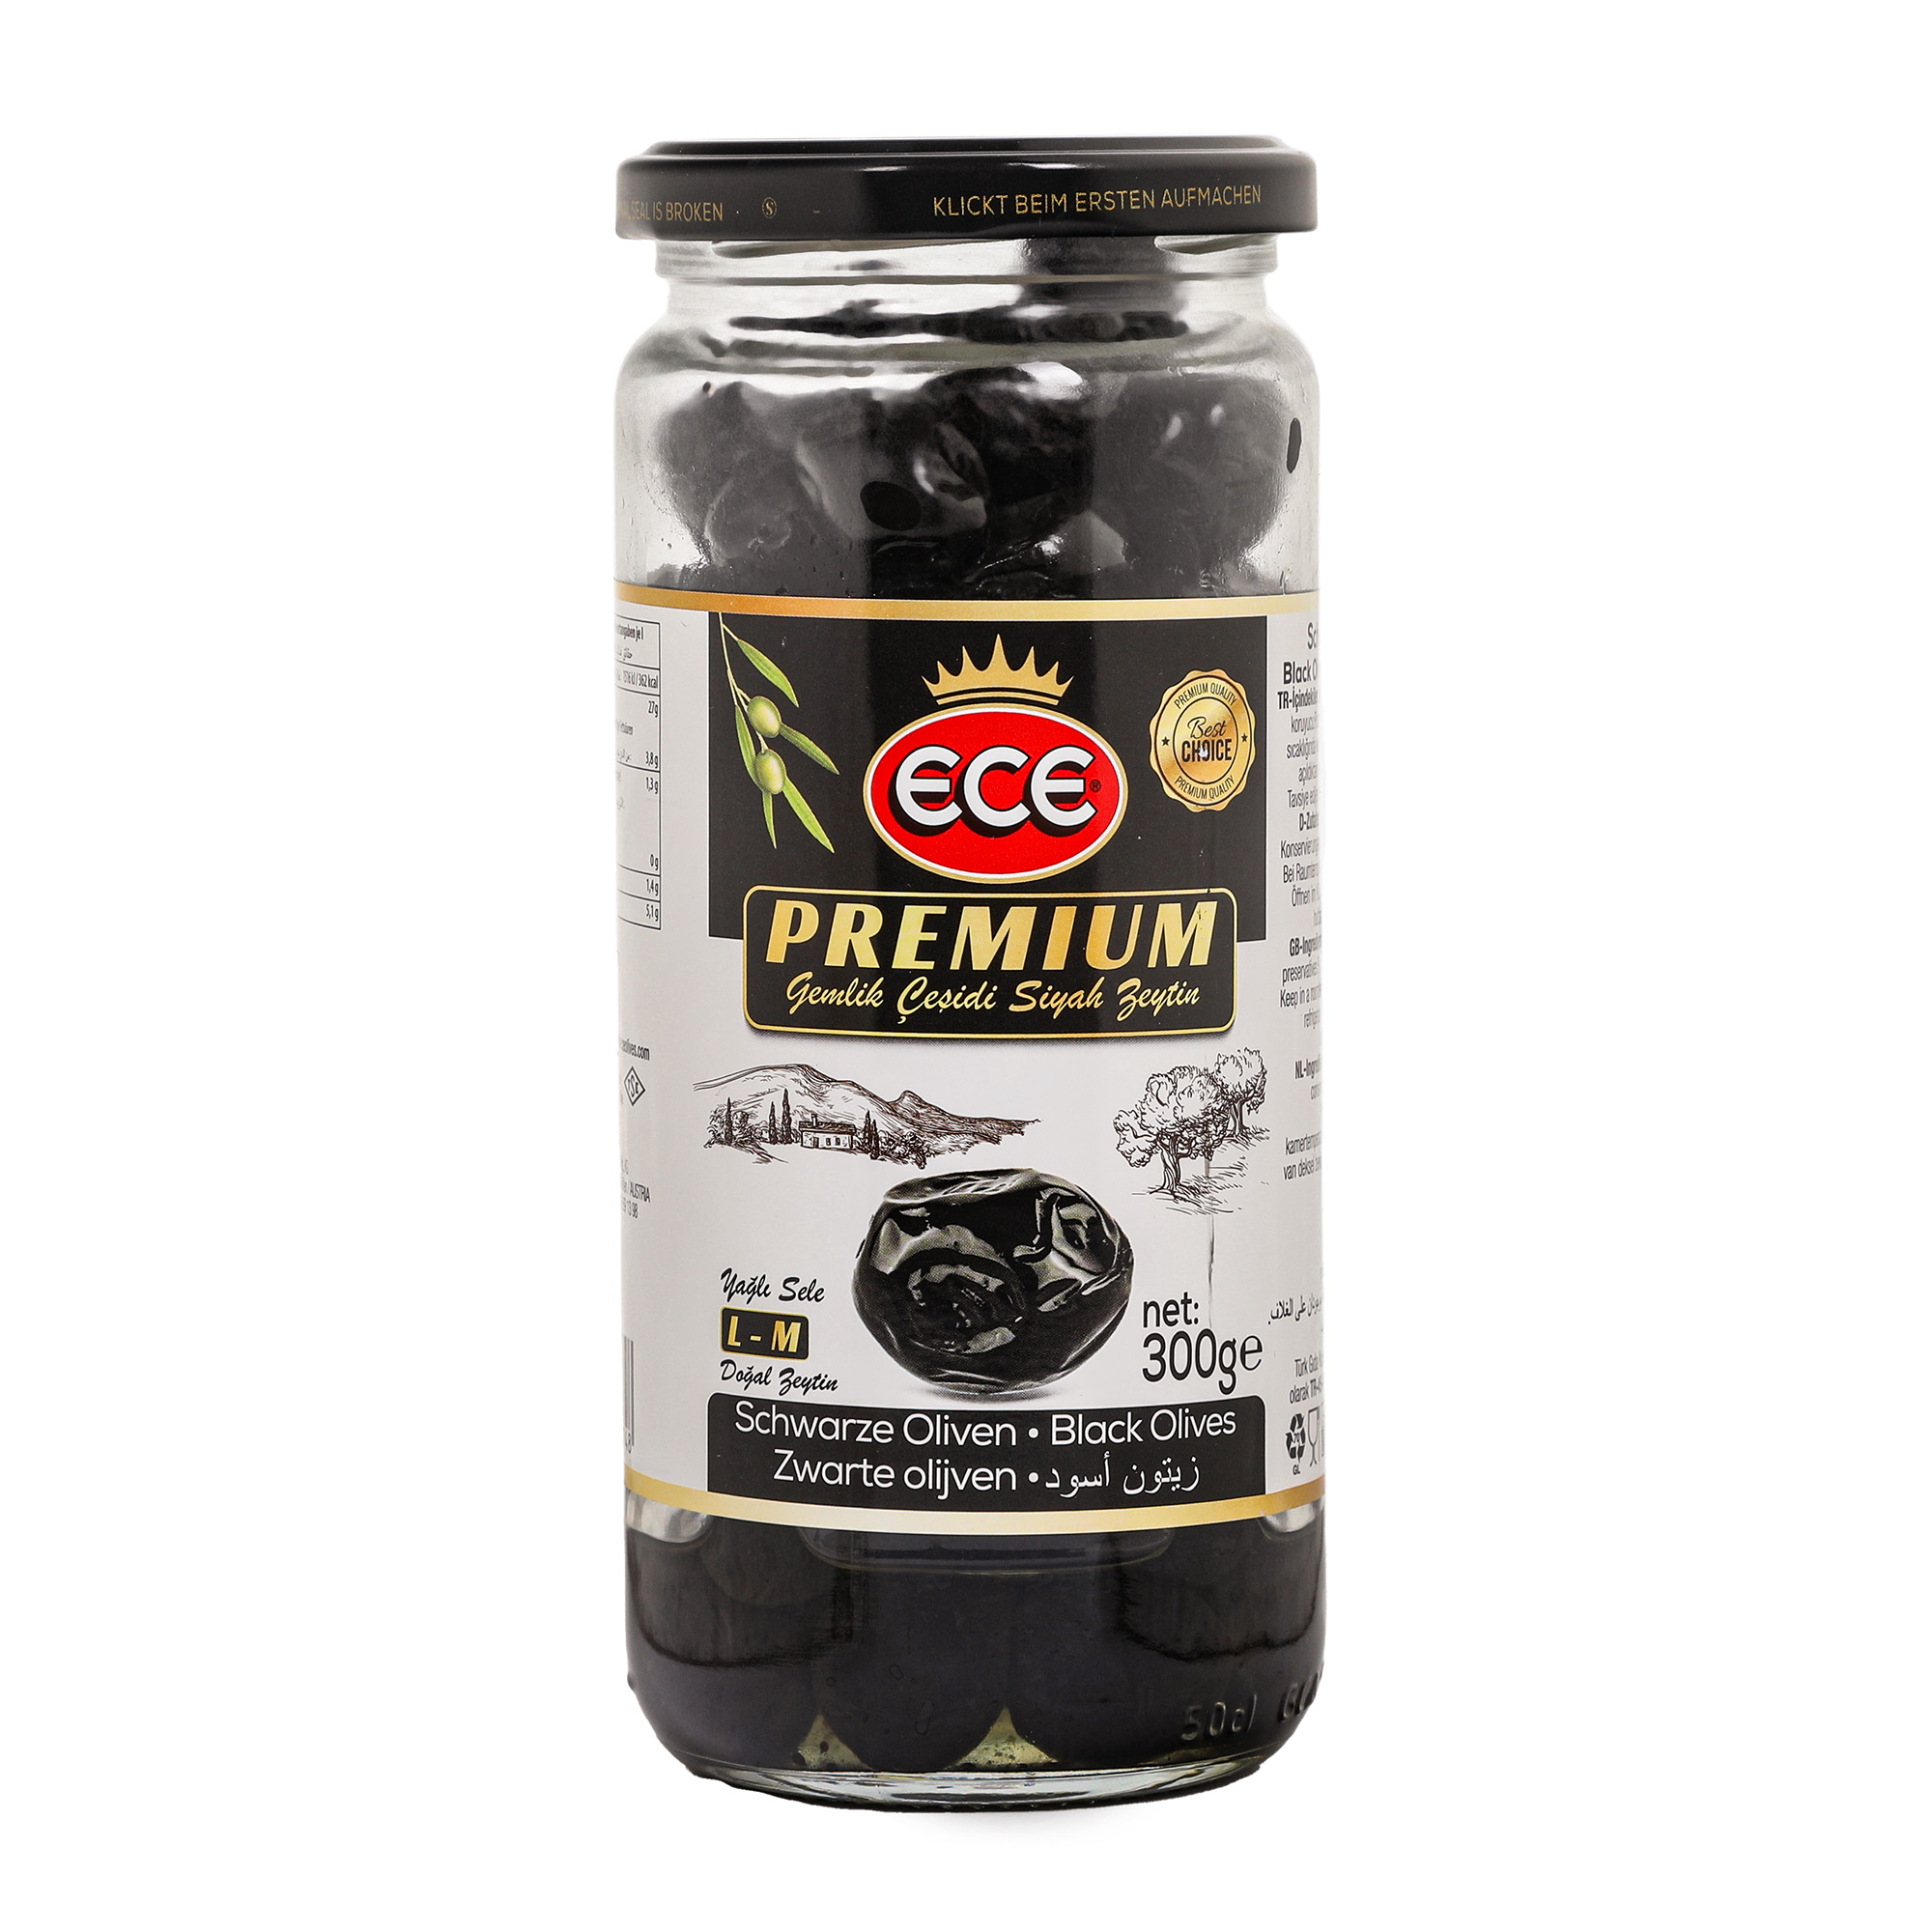 Оливки черные Ece Premium в масле с косточкой, 300 г маслины delphi зароменес с косточкой в масле 340 г